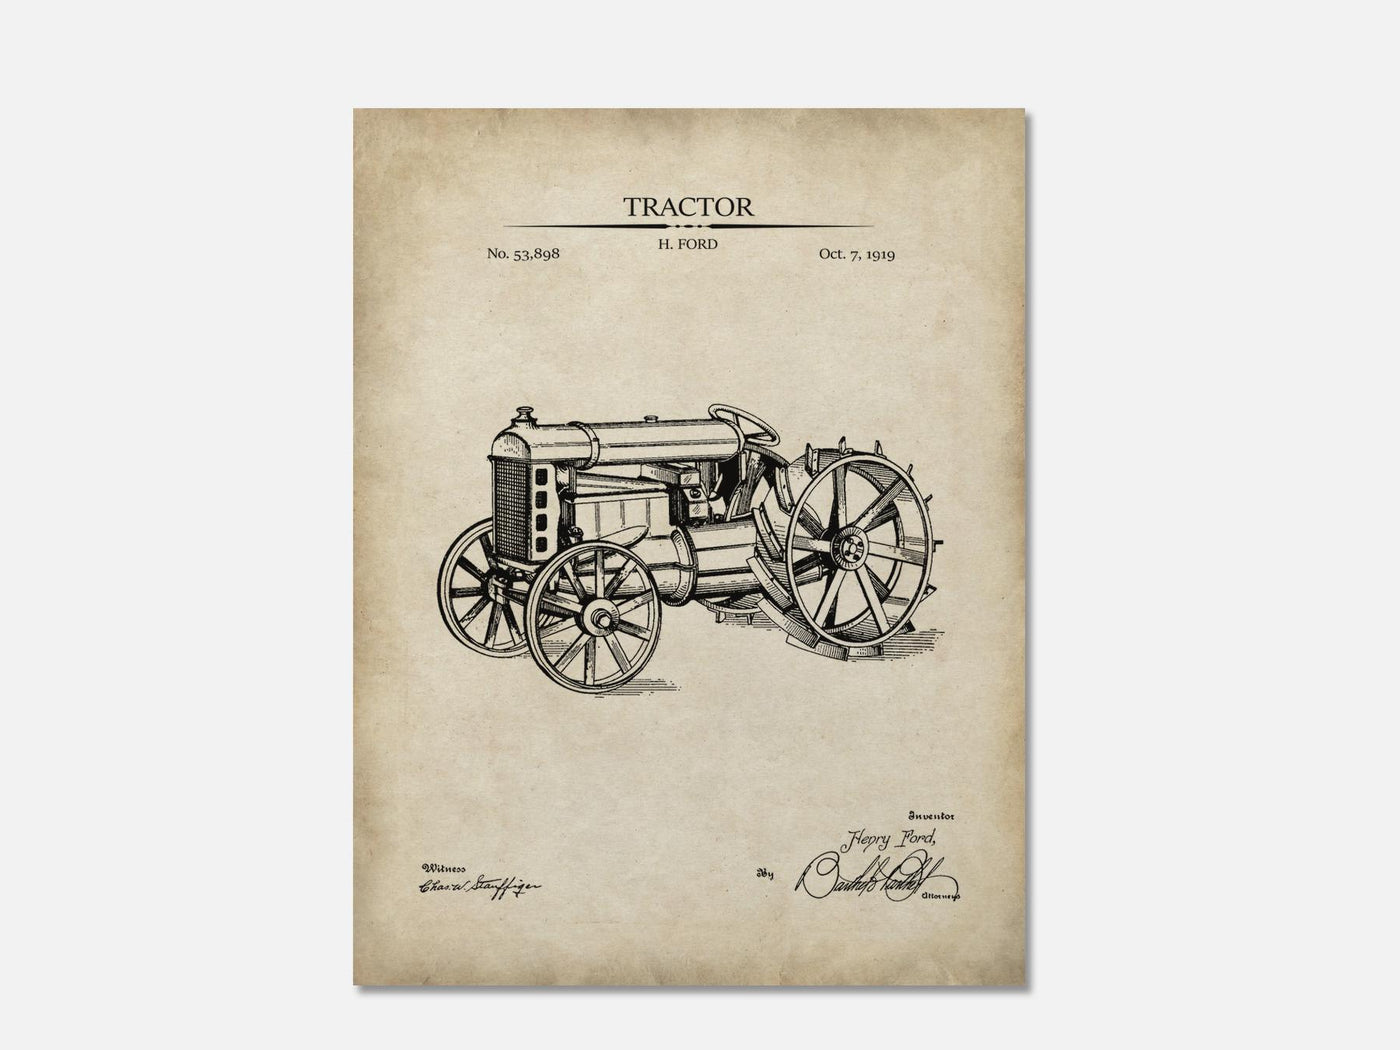 Tractor Patent Print mockup - A_t10025.3-V1-PC_AP-SS_1-PS_5x7-C_par variant